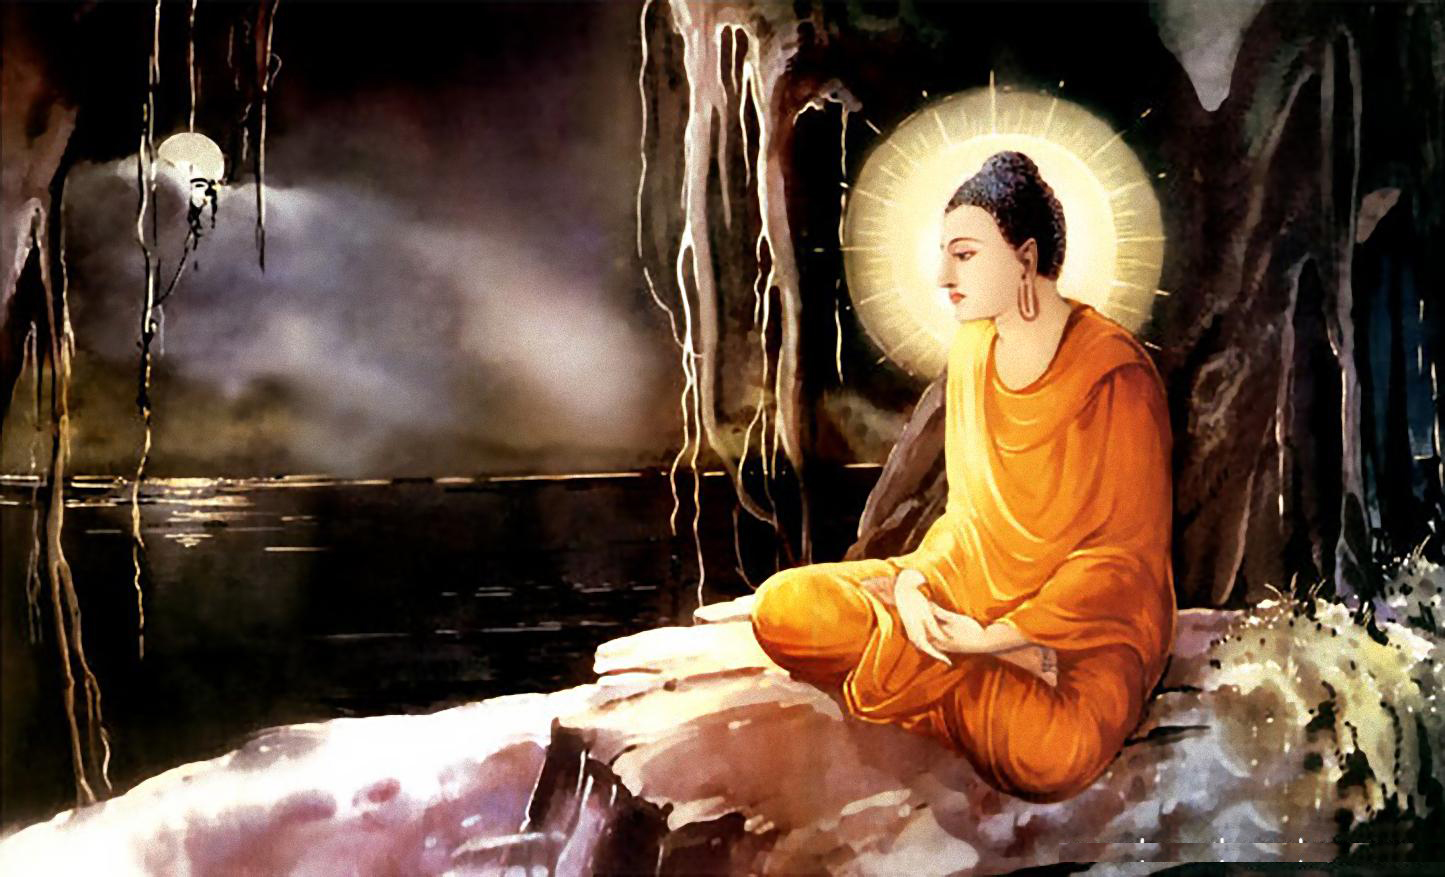 Bồ Đề Đạo Tràng: Hãy đặt nghiêng mình vào thế giới tĩnh lặng tại Bồ Đề Đạo Tràng. Cùng tham quan hình ảnh đẹp tuyệt vời về ngôi chùa cổ kính nhất trong hệ thống truyền thống Đại Thừa Phật giáo Việt Nam.